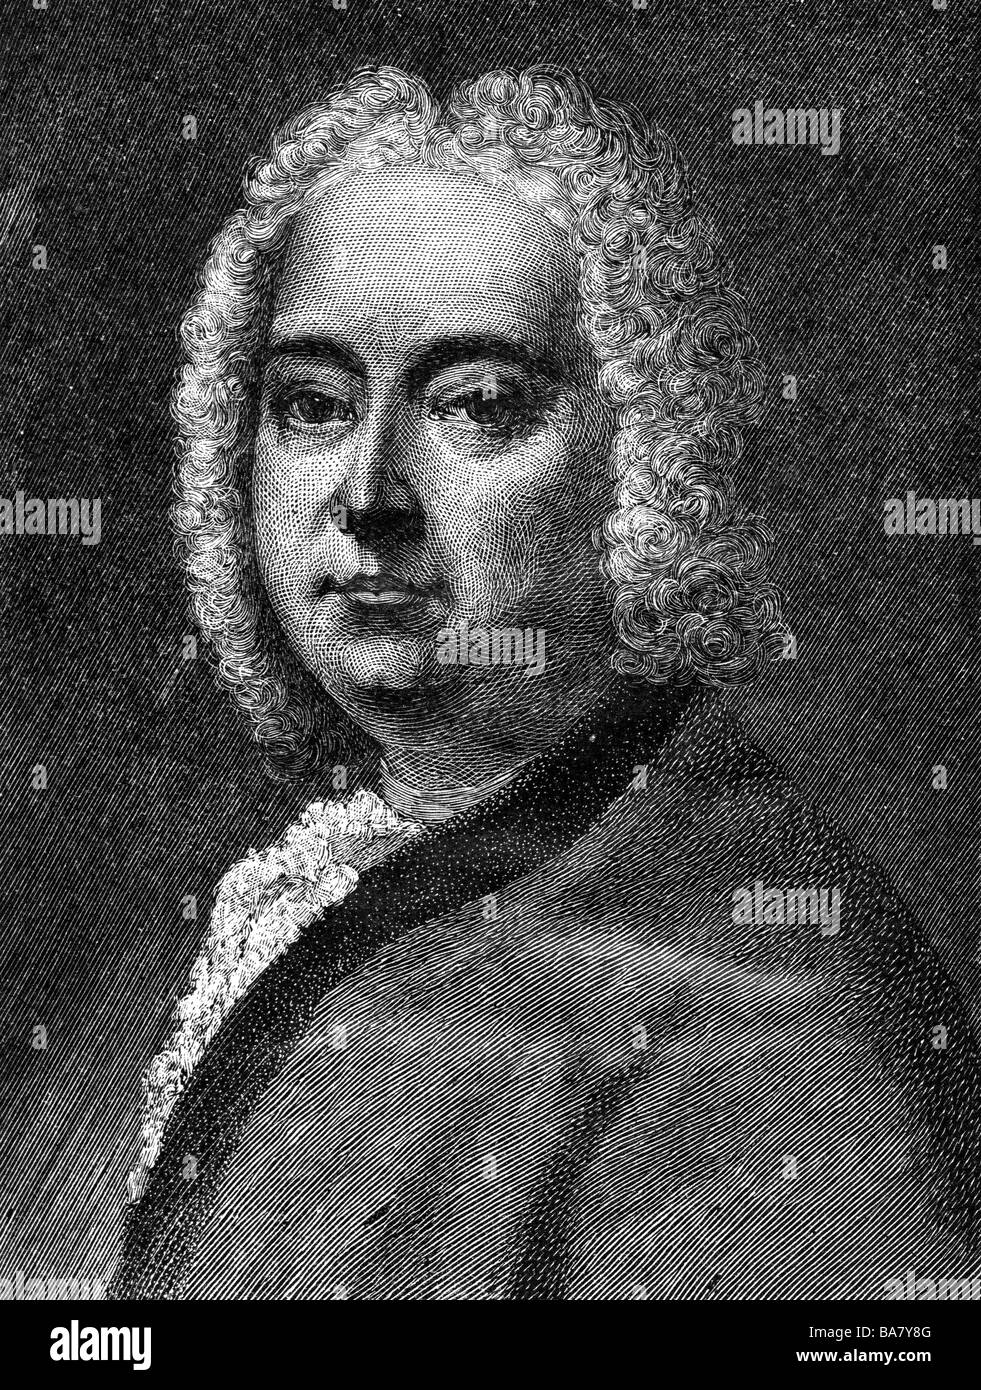 Handel, George Frederic, 23.2.1685 - 14.4.1759, compositeur allemand, portrait, gravure en bois de Moritz Klinkicht, 19ème siècle, , Banque D'Images